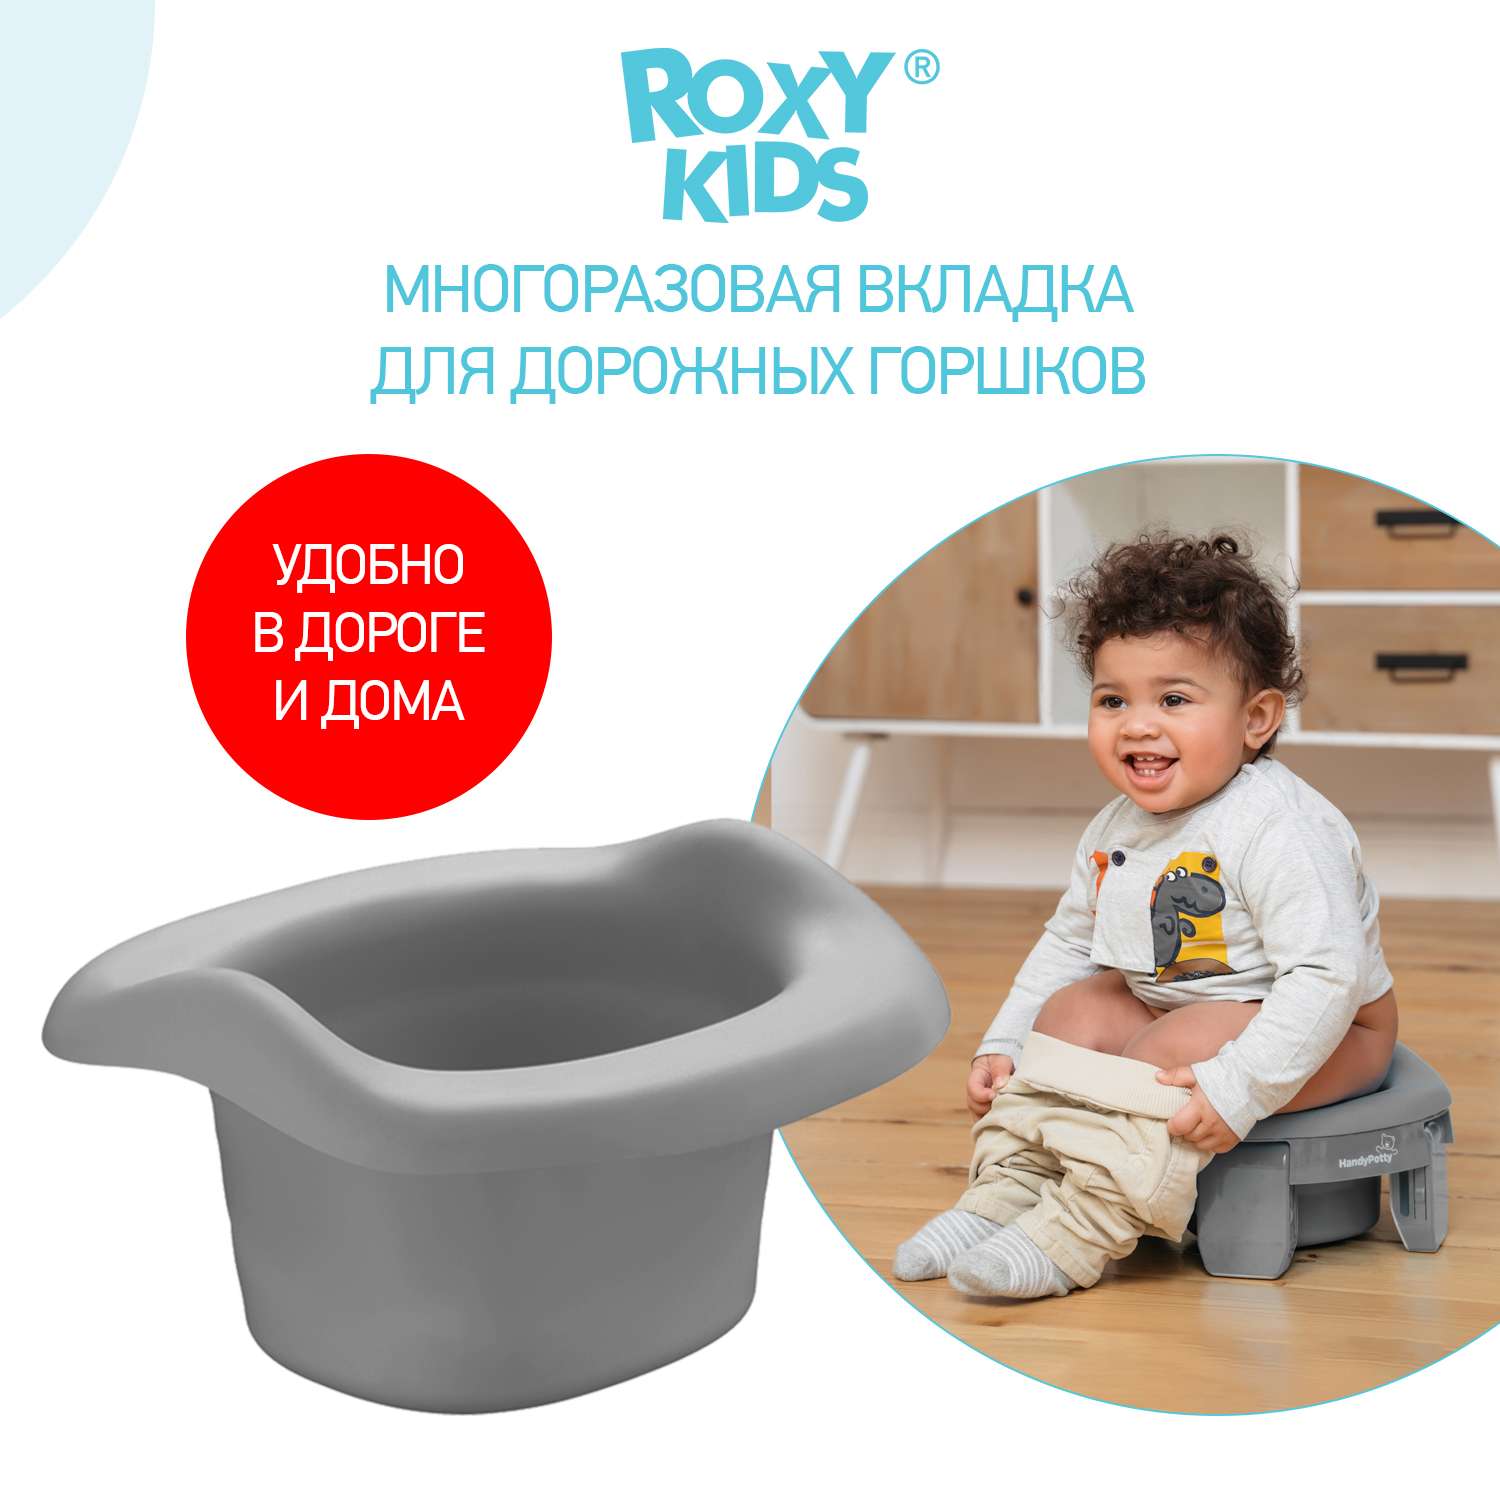 Вкладка многоразовая ROXY-KIDS Универсальная для дорожных горшков цвет серый - фото 1